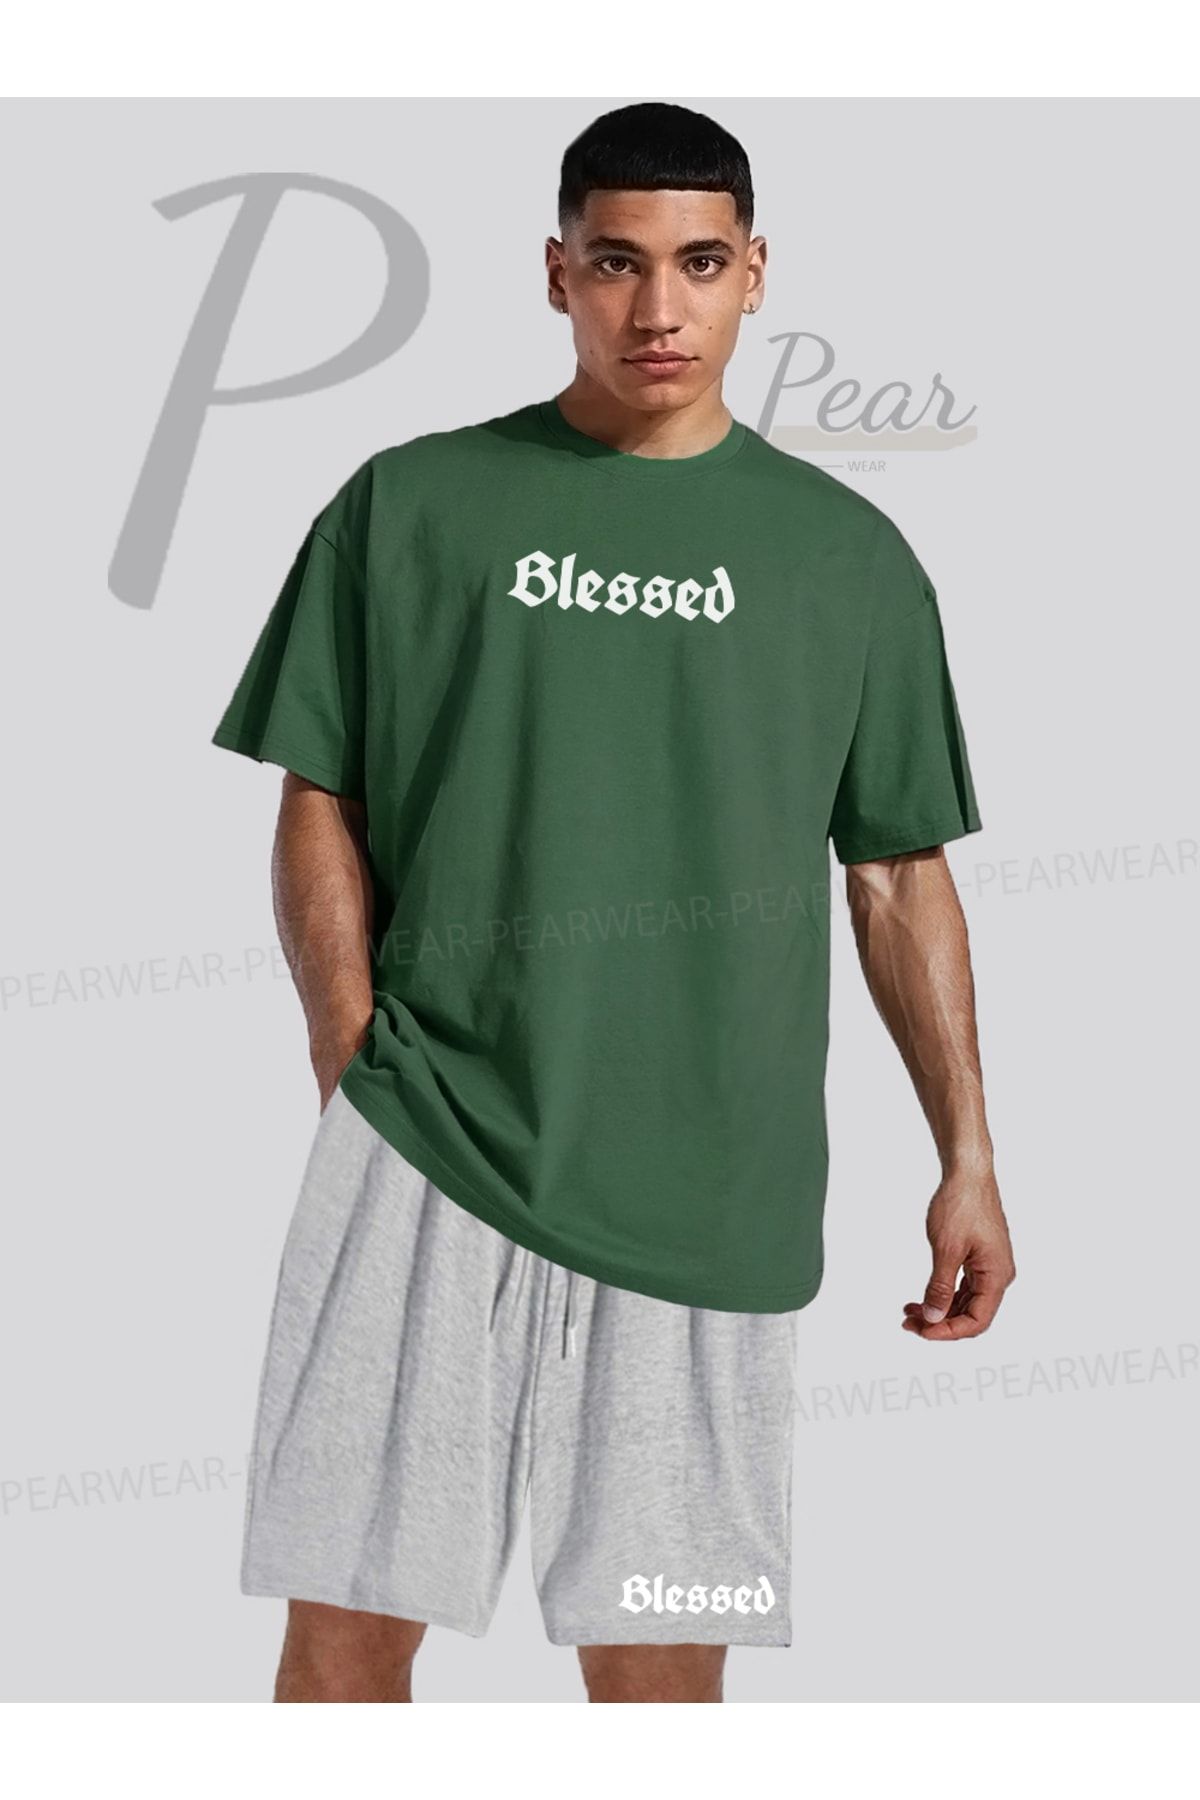 Pear Wear Blessed Baskılı Oversize Tişört Regular Fit Şort T-Shirt Şort İkili Takım